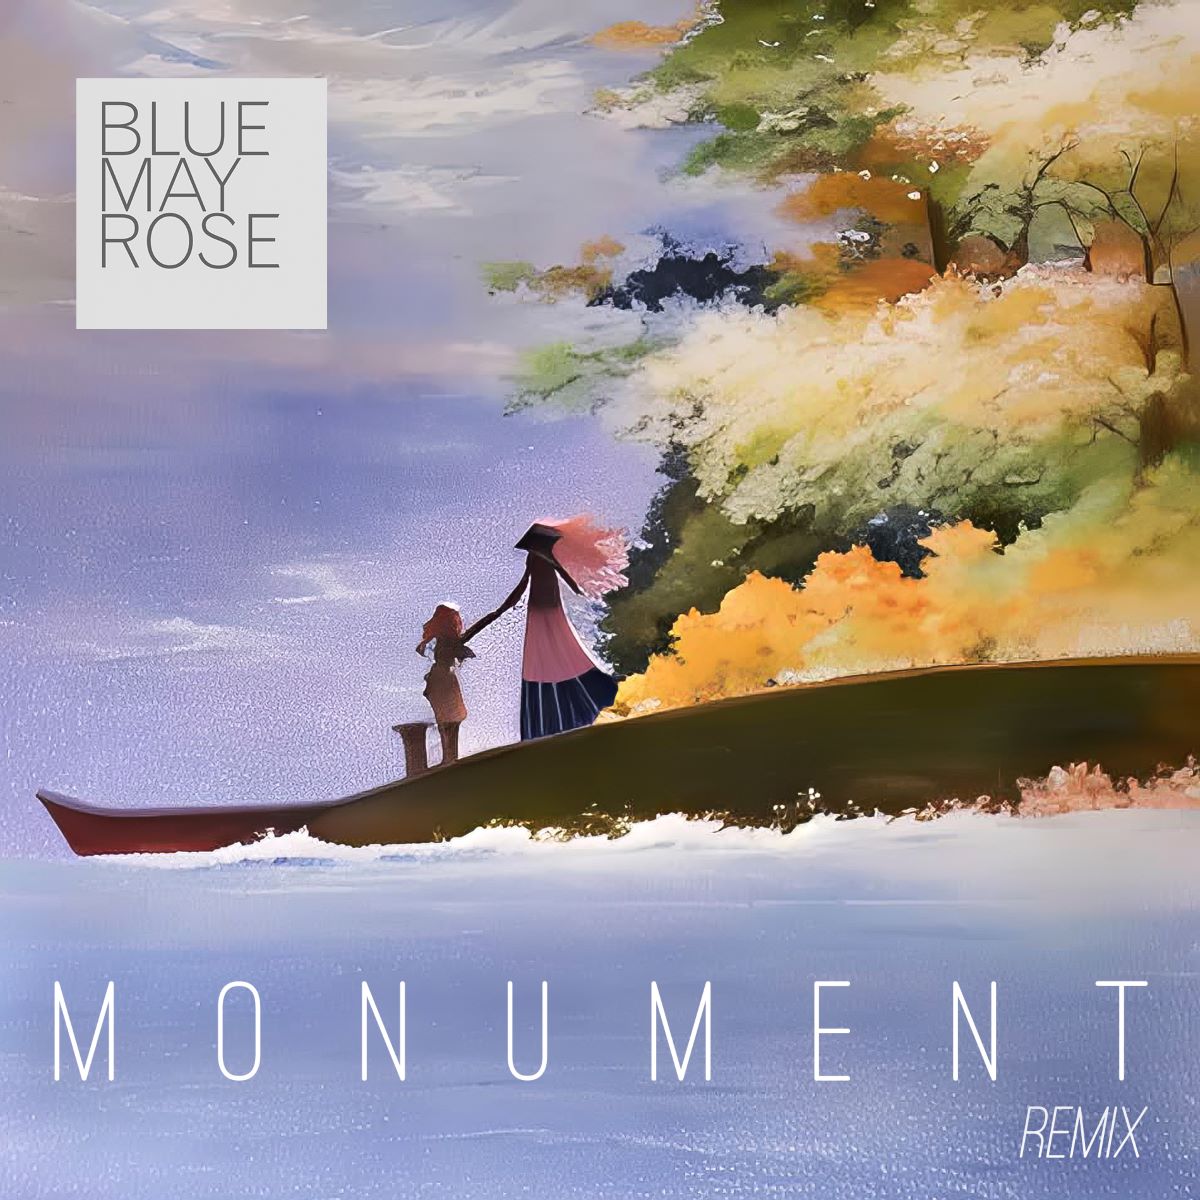 Monument (Remix) Coverart